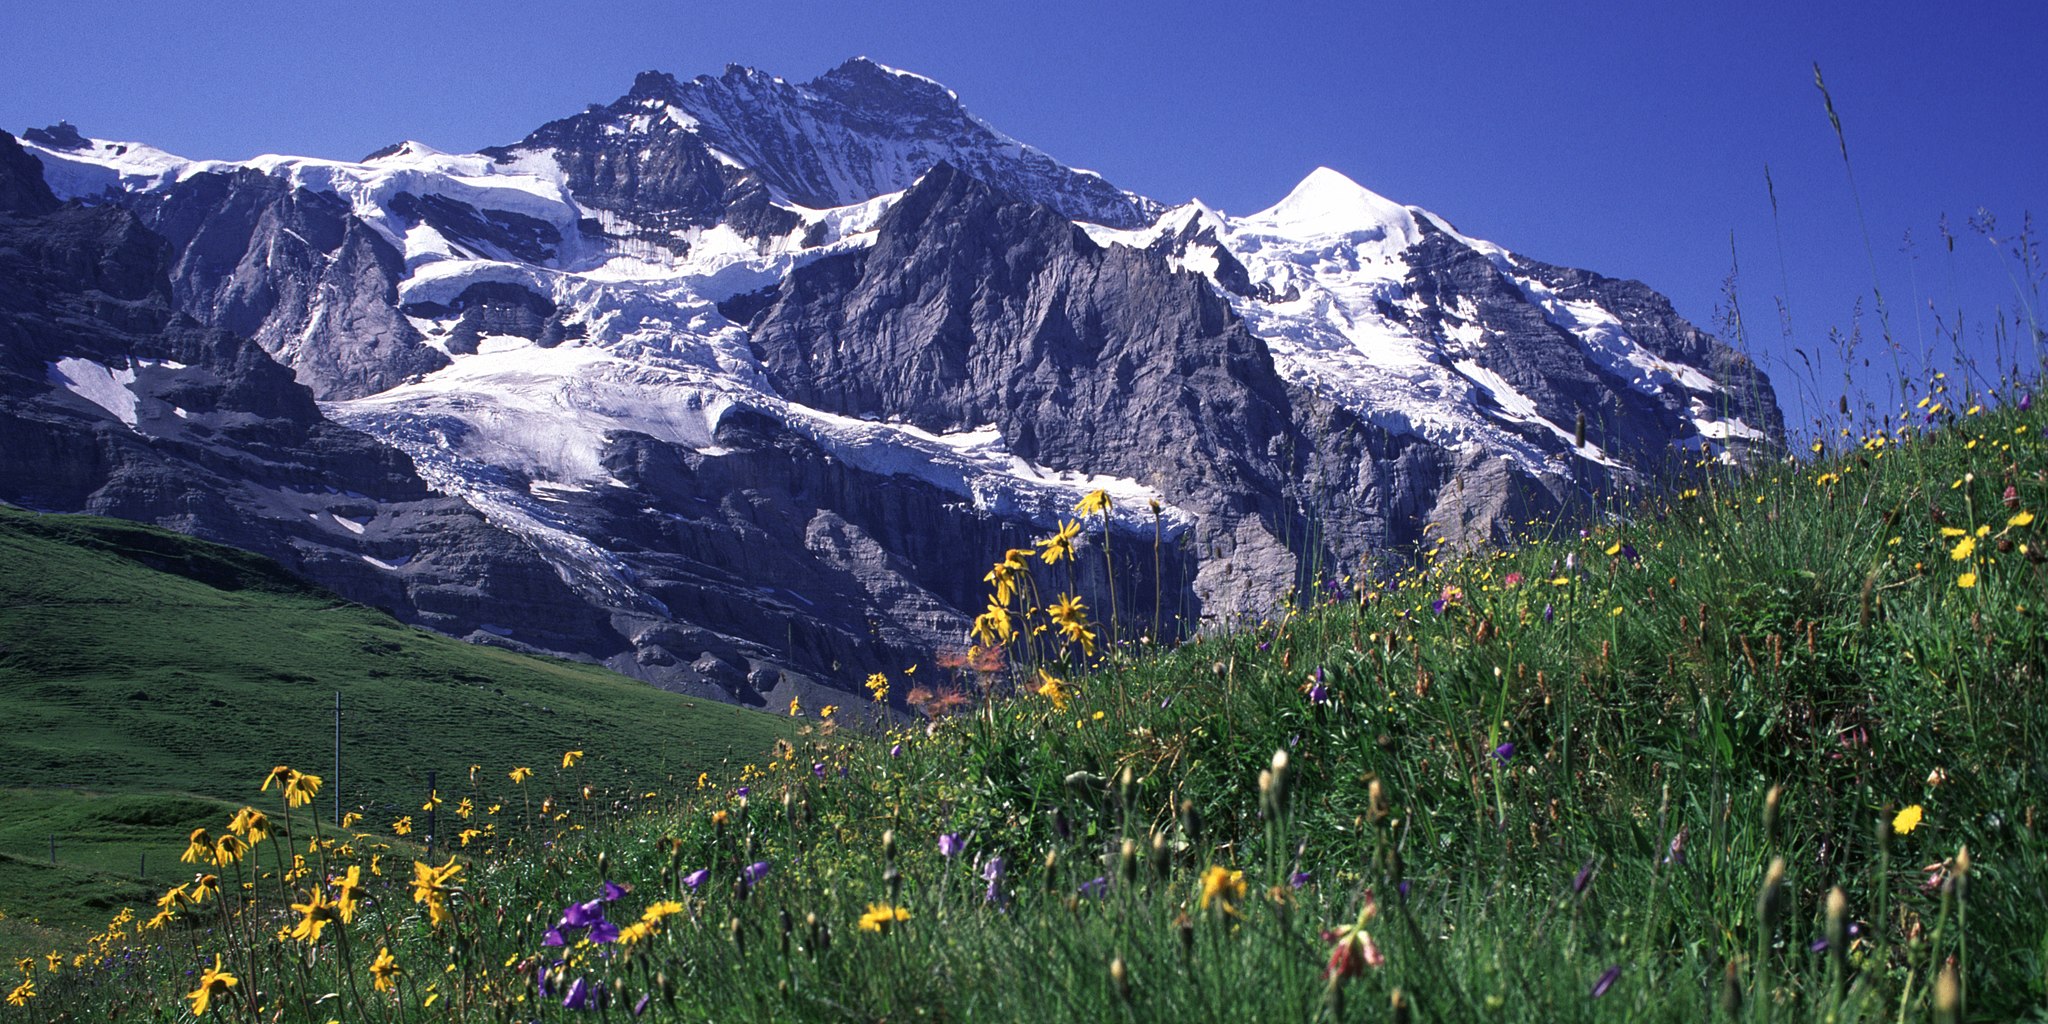 Swiss alps with wildflowers Jungfrau